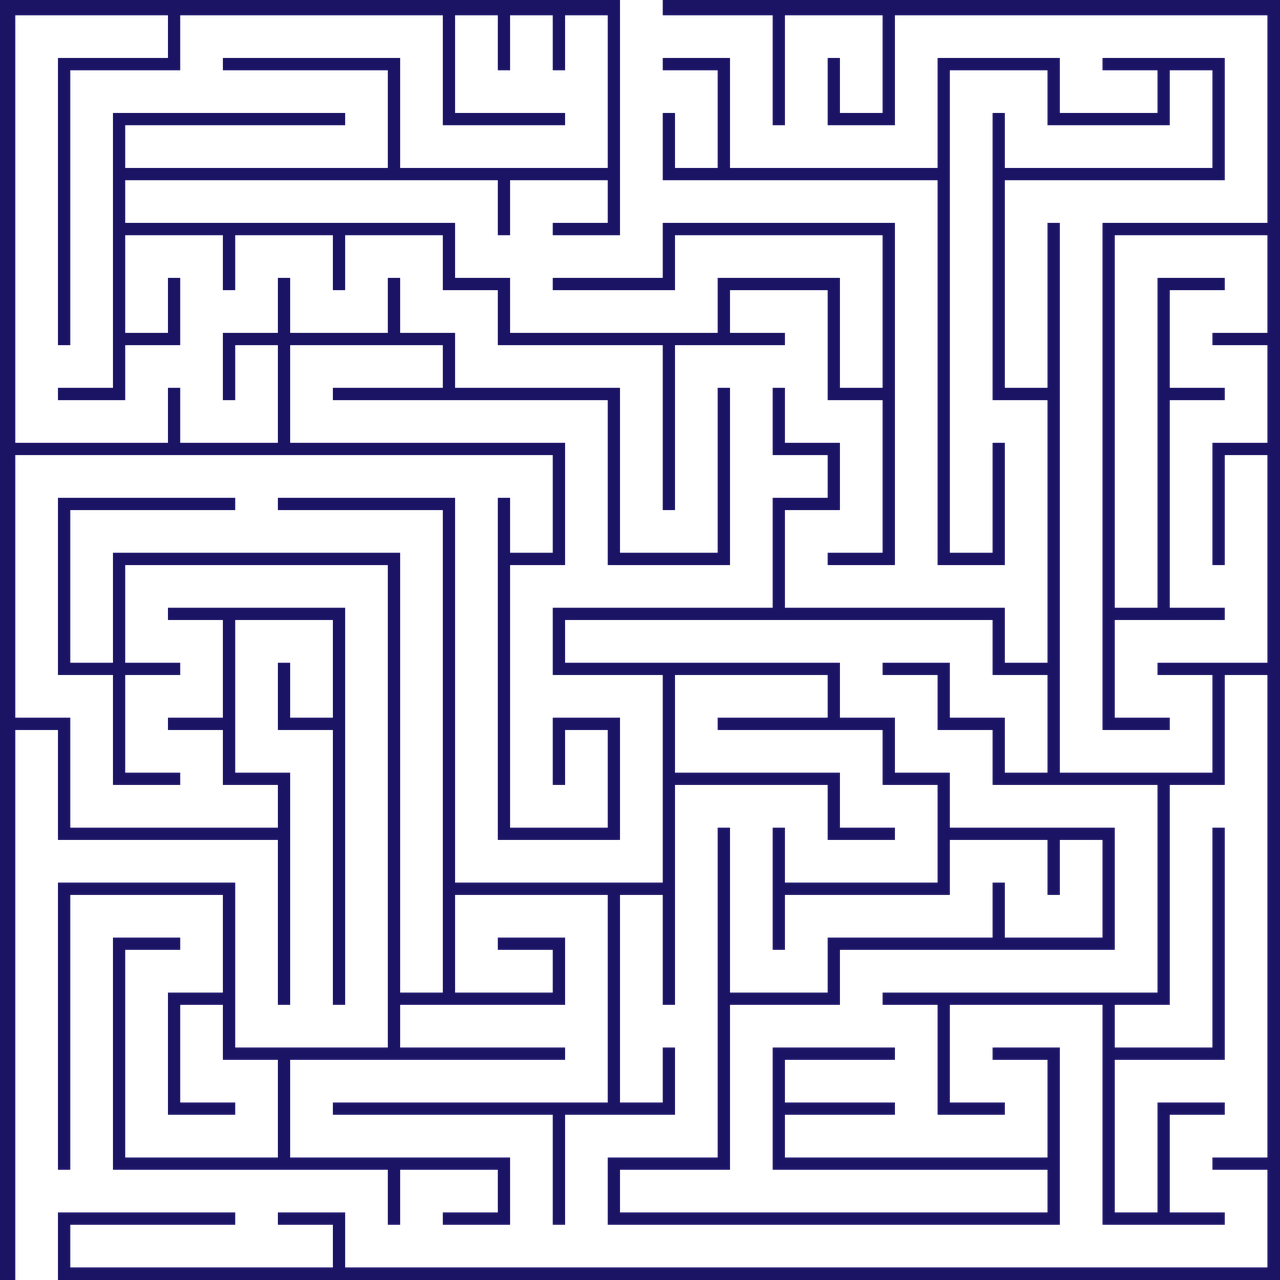 Zeichnung eines Labyrinths